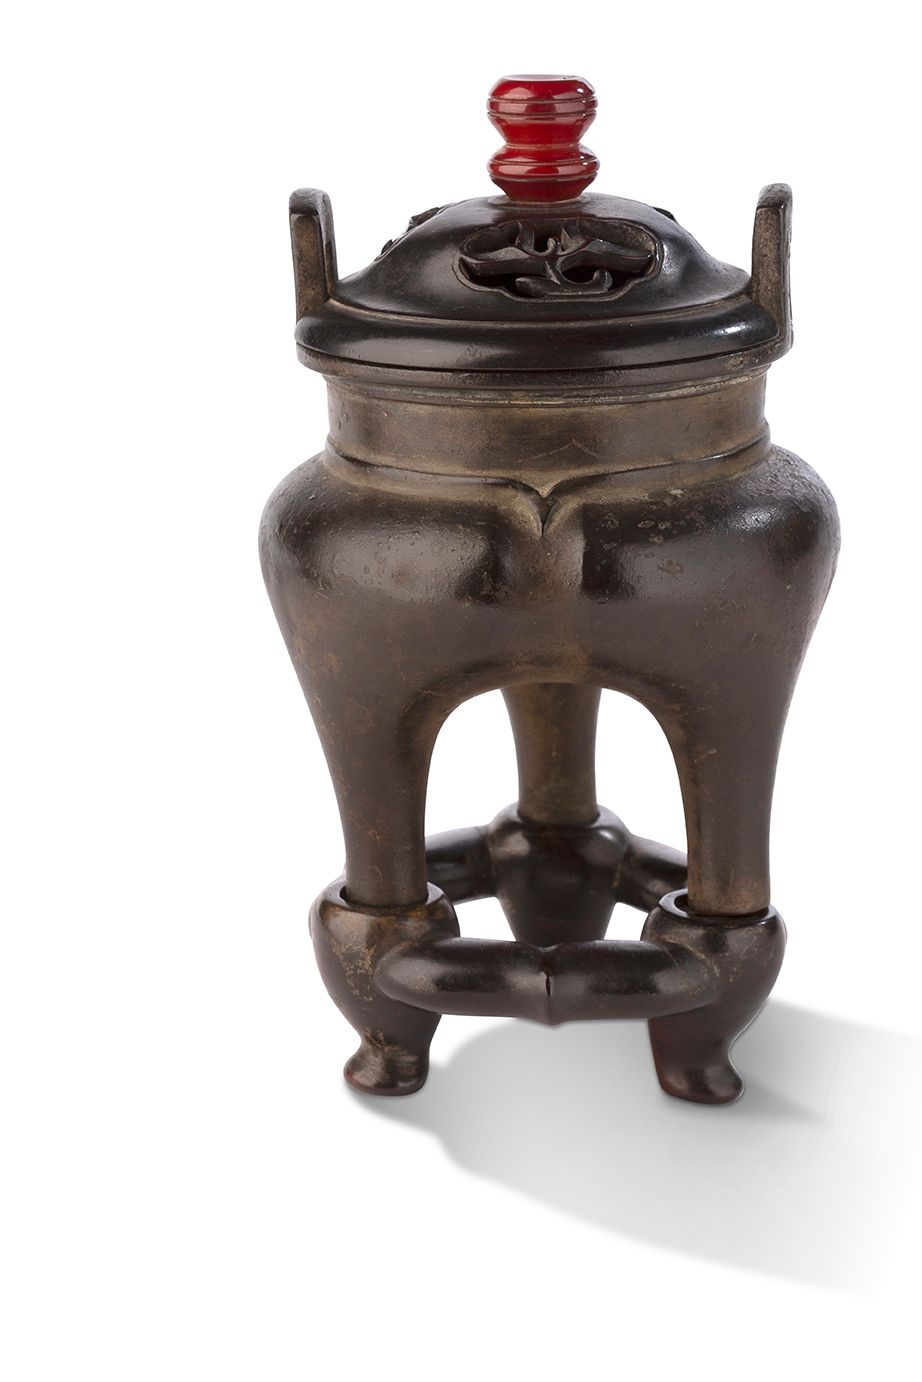 CHINE XVIIe SIÈCLE Pequeño incensario trípode
De bronce patinado en marrón, el c&hellip;